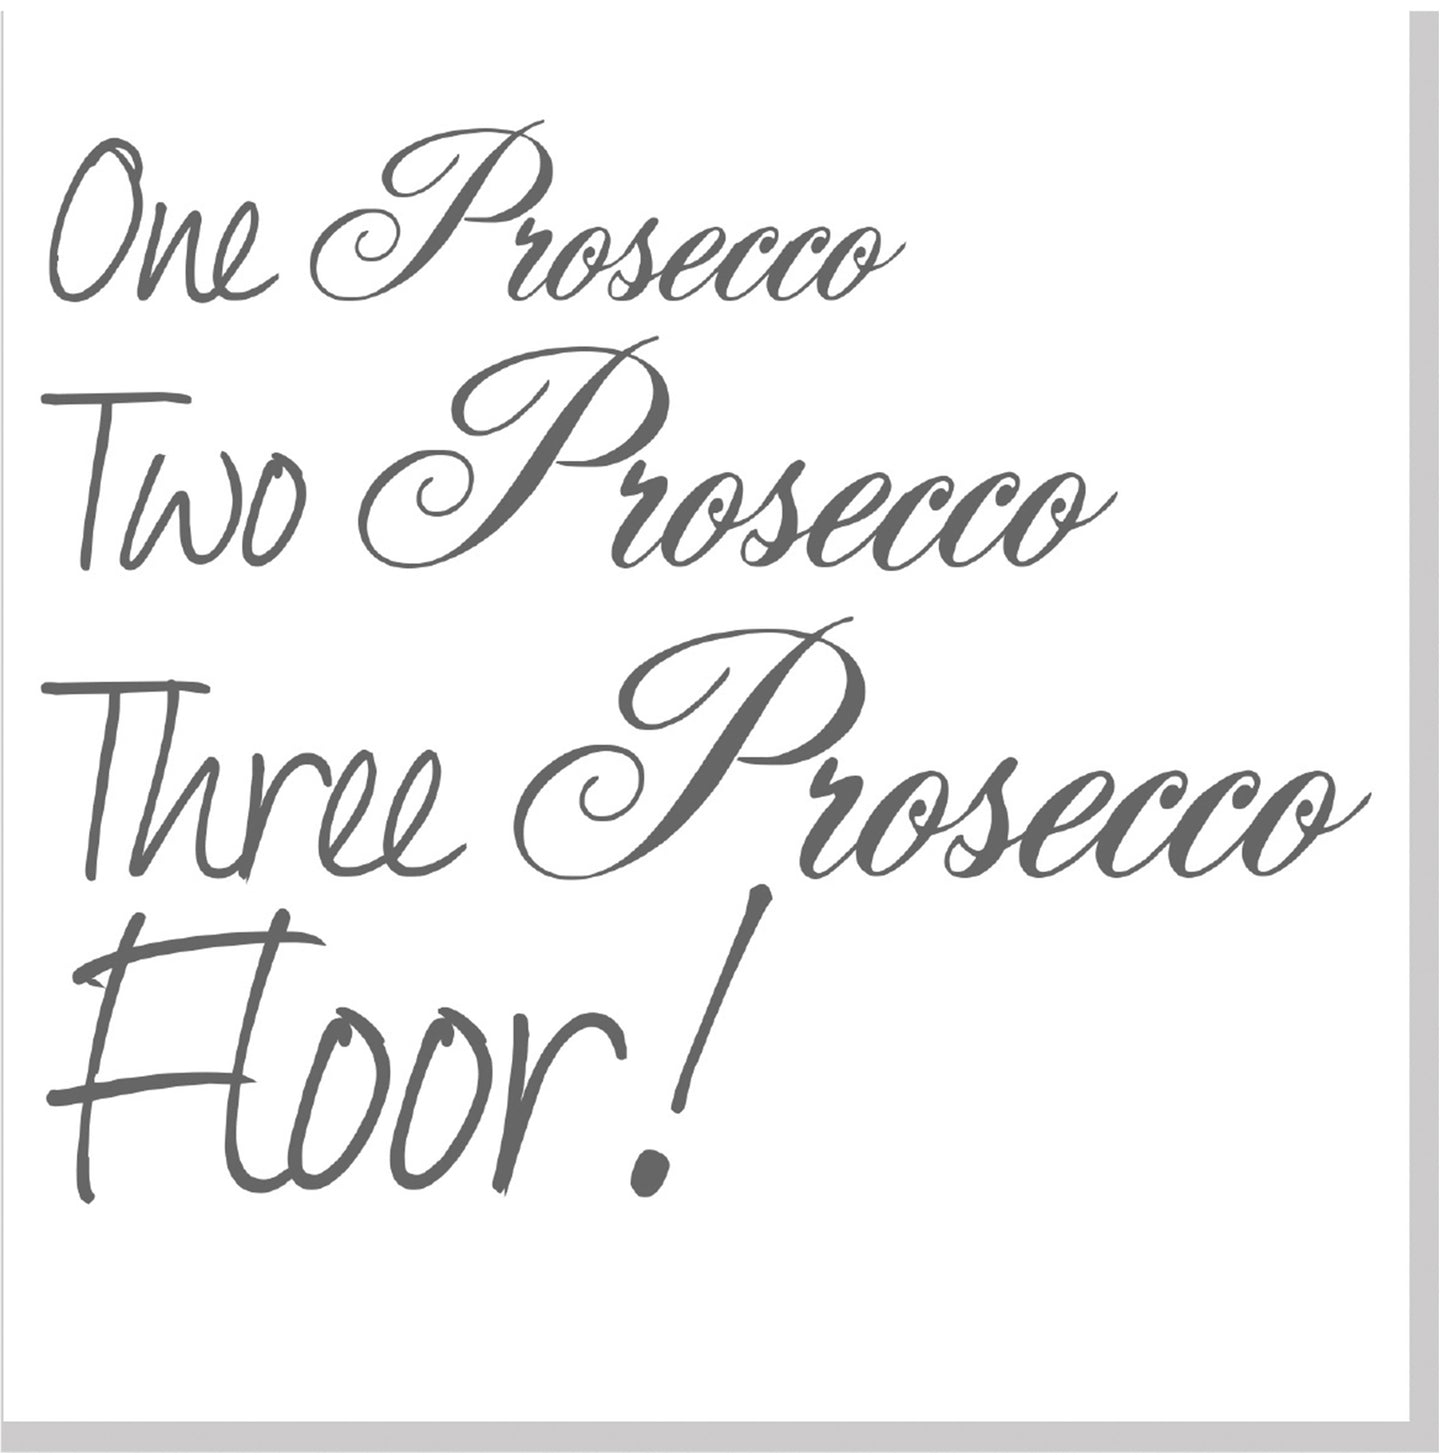 Prosecco floor square card